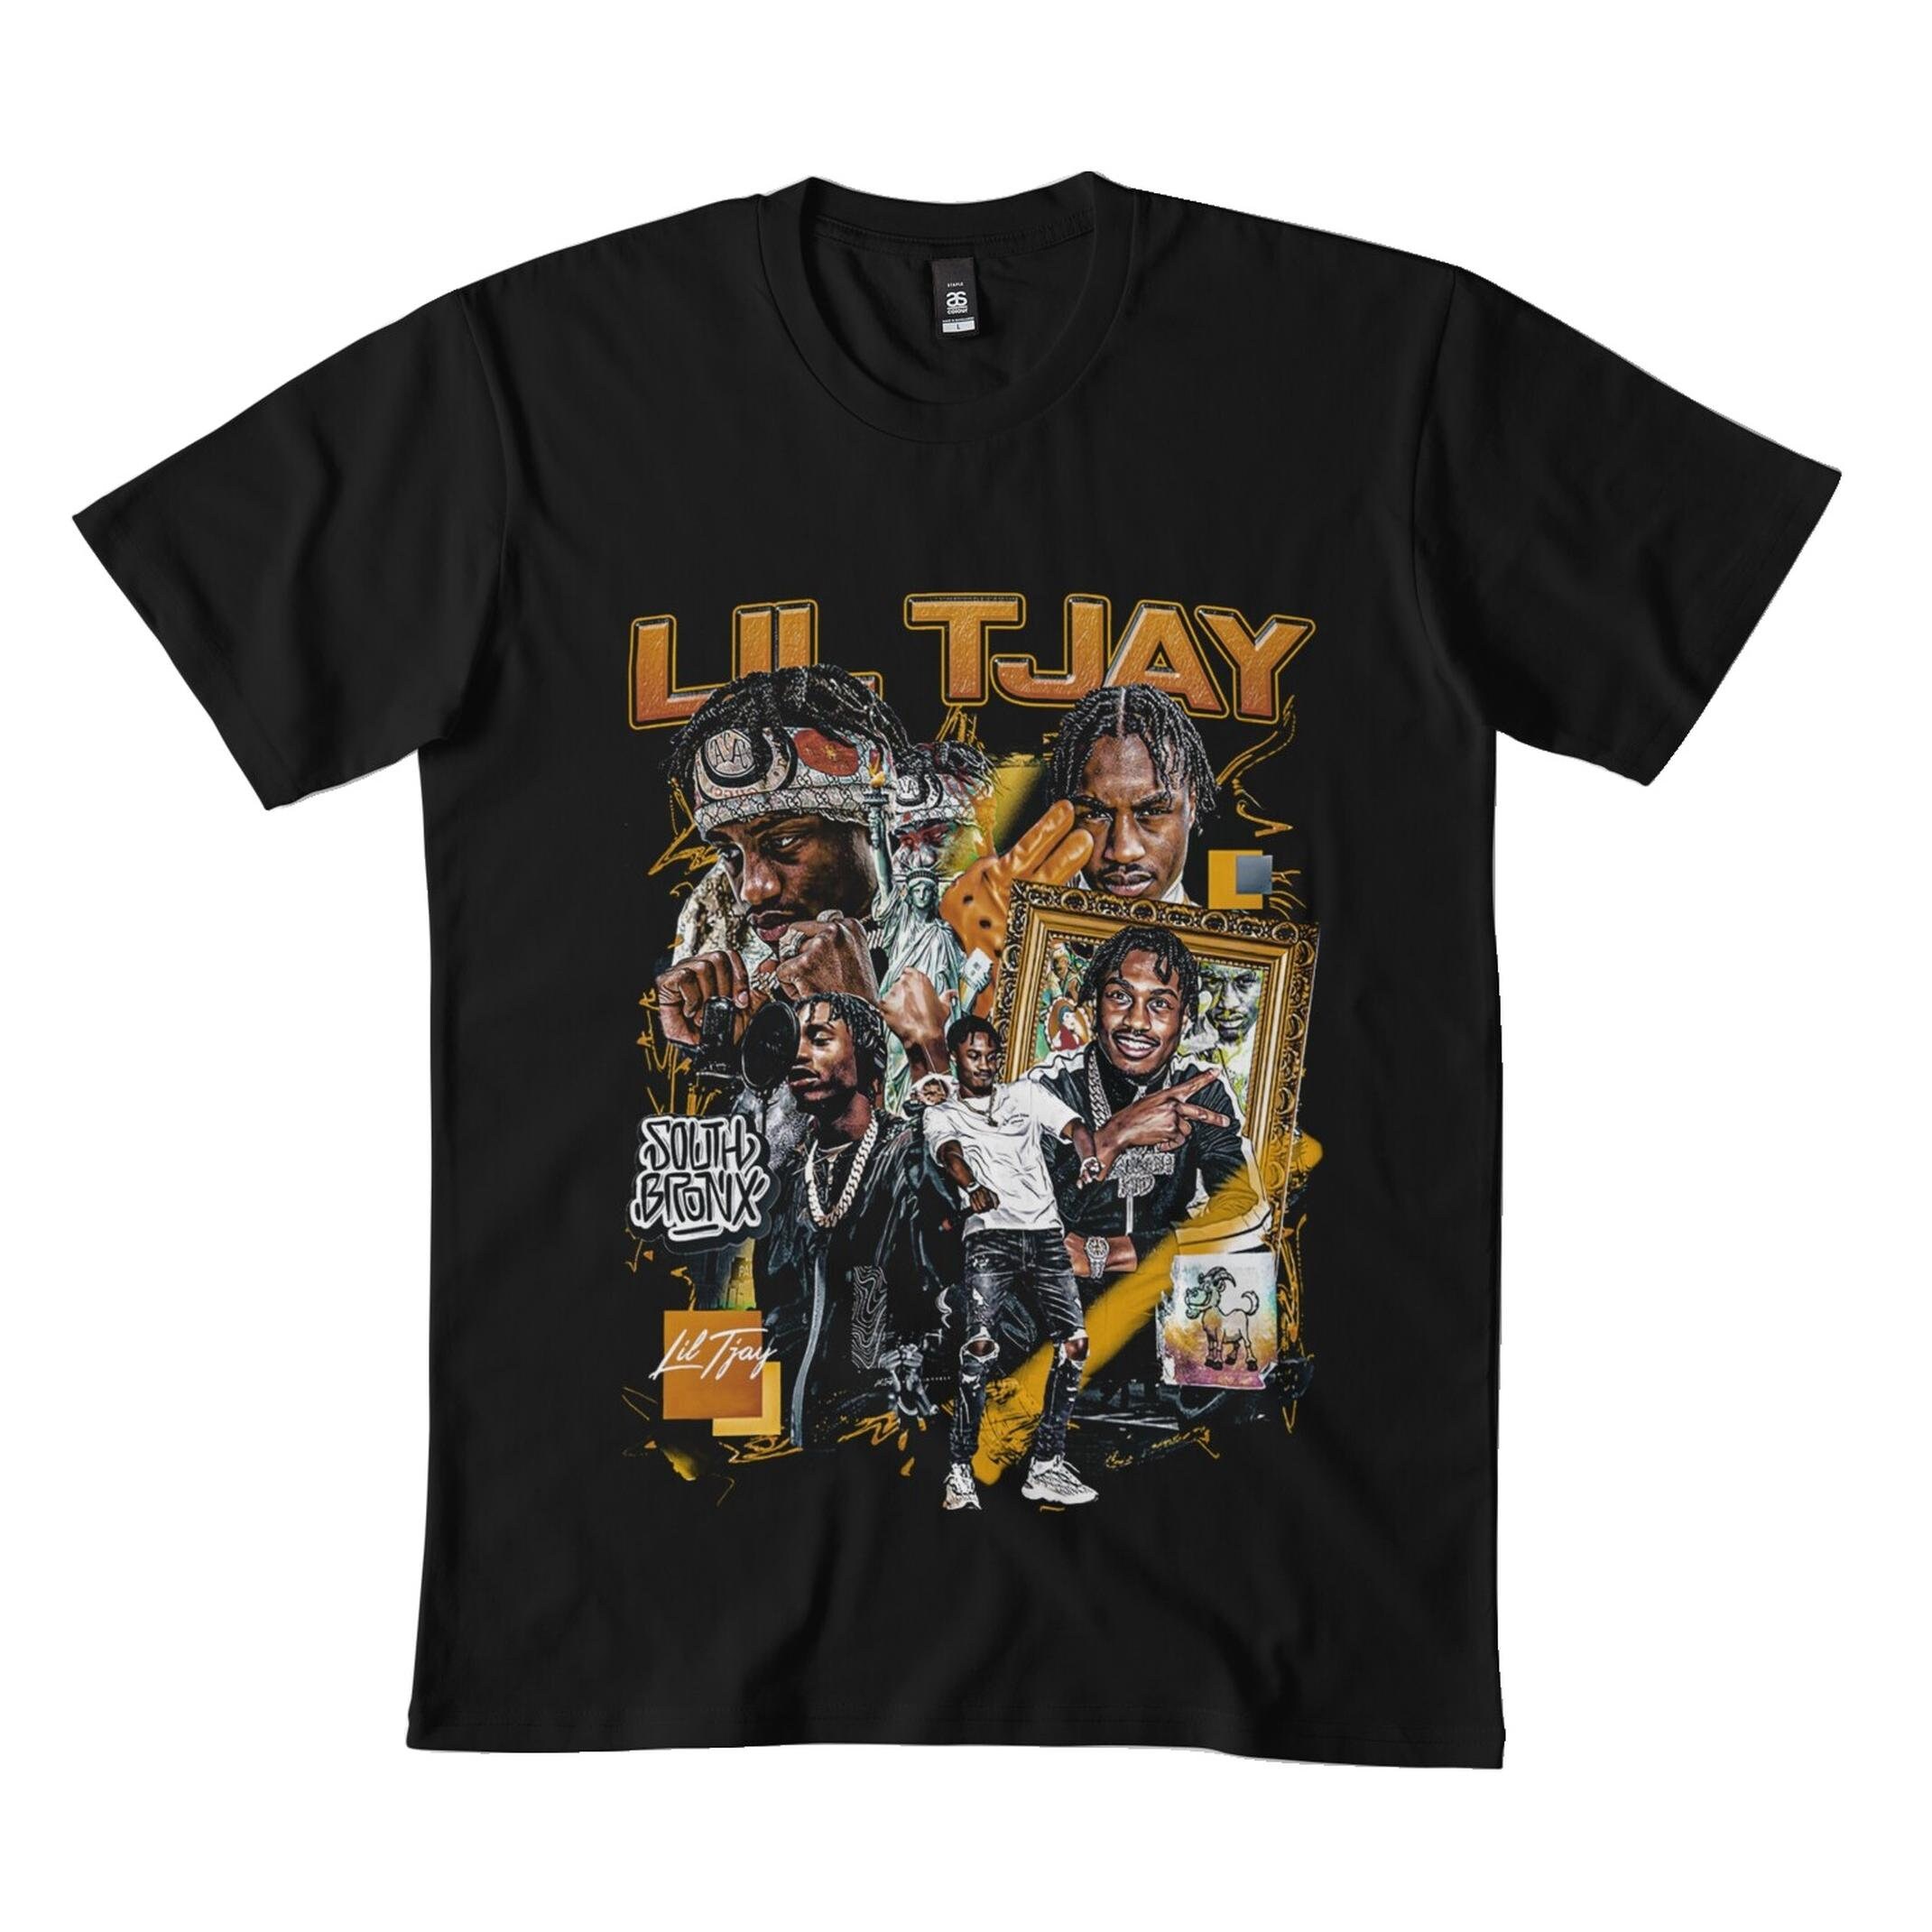 Lil Tjay Shirt, Lil Tjay Shirt